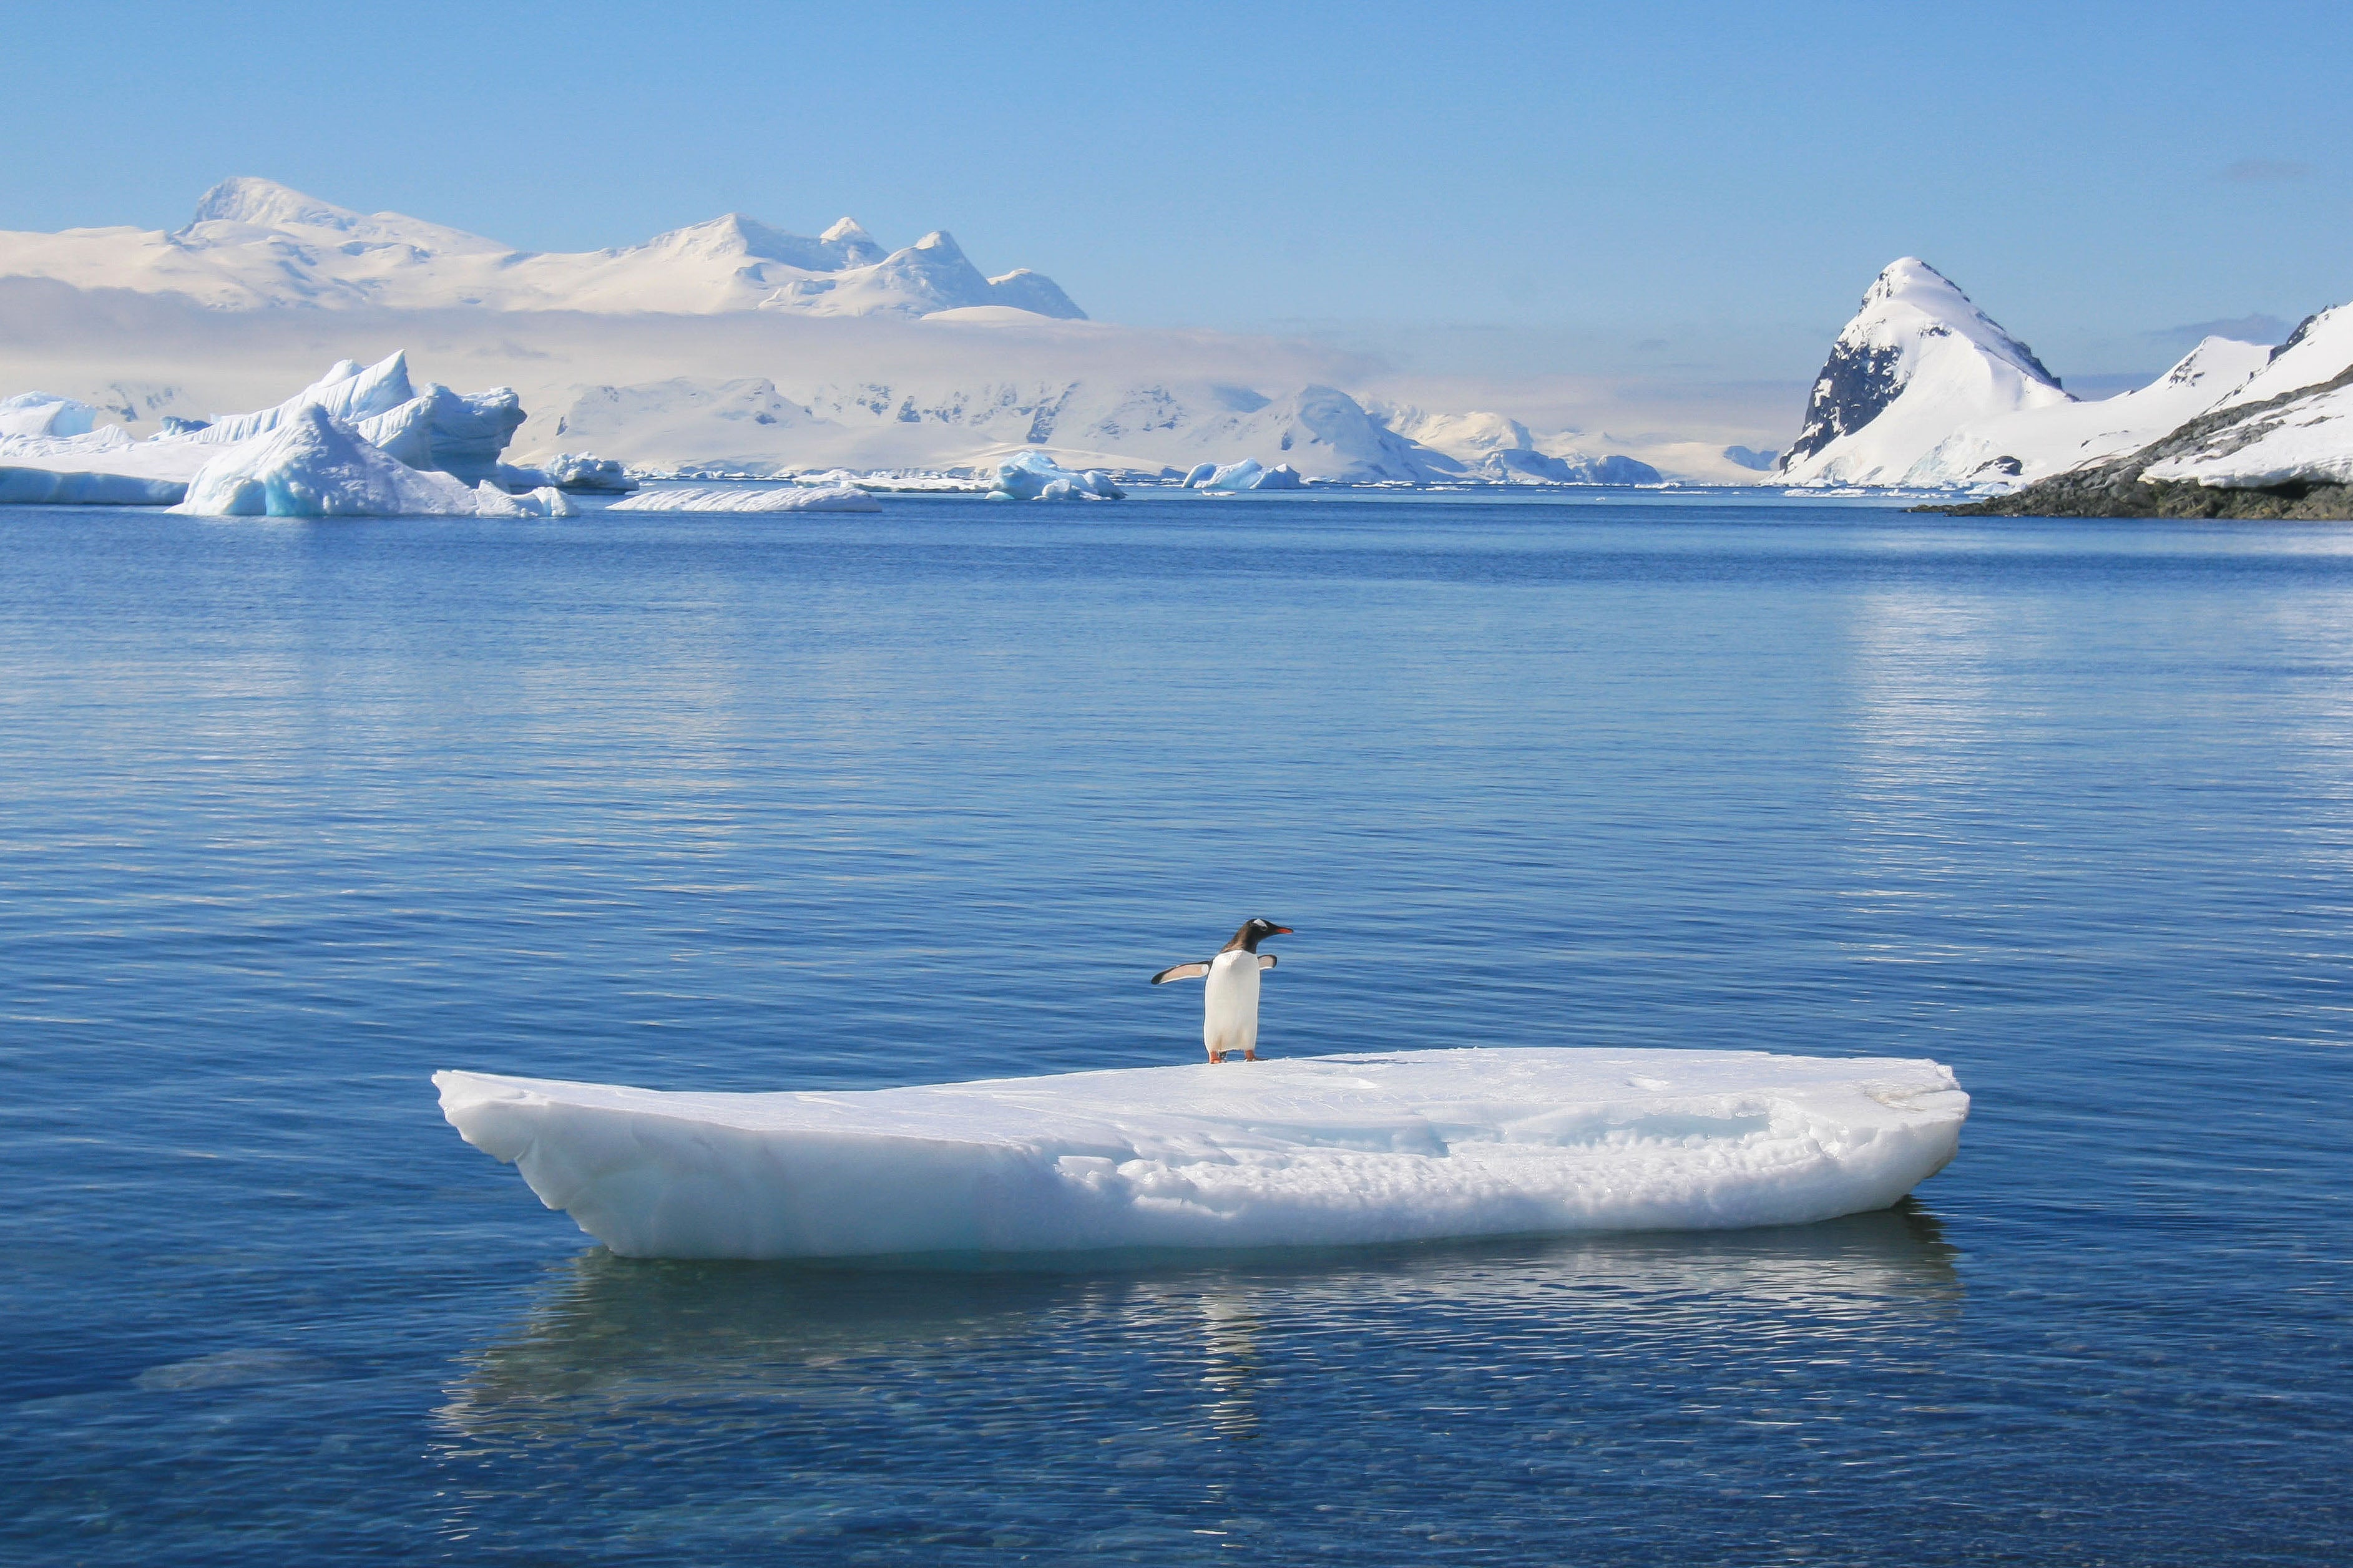 Gentoo Penguin on surfboard-esque ice, Antarctica